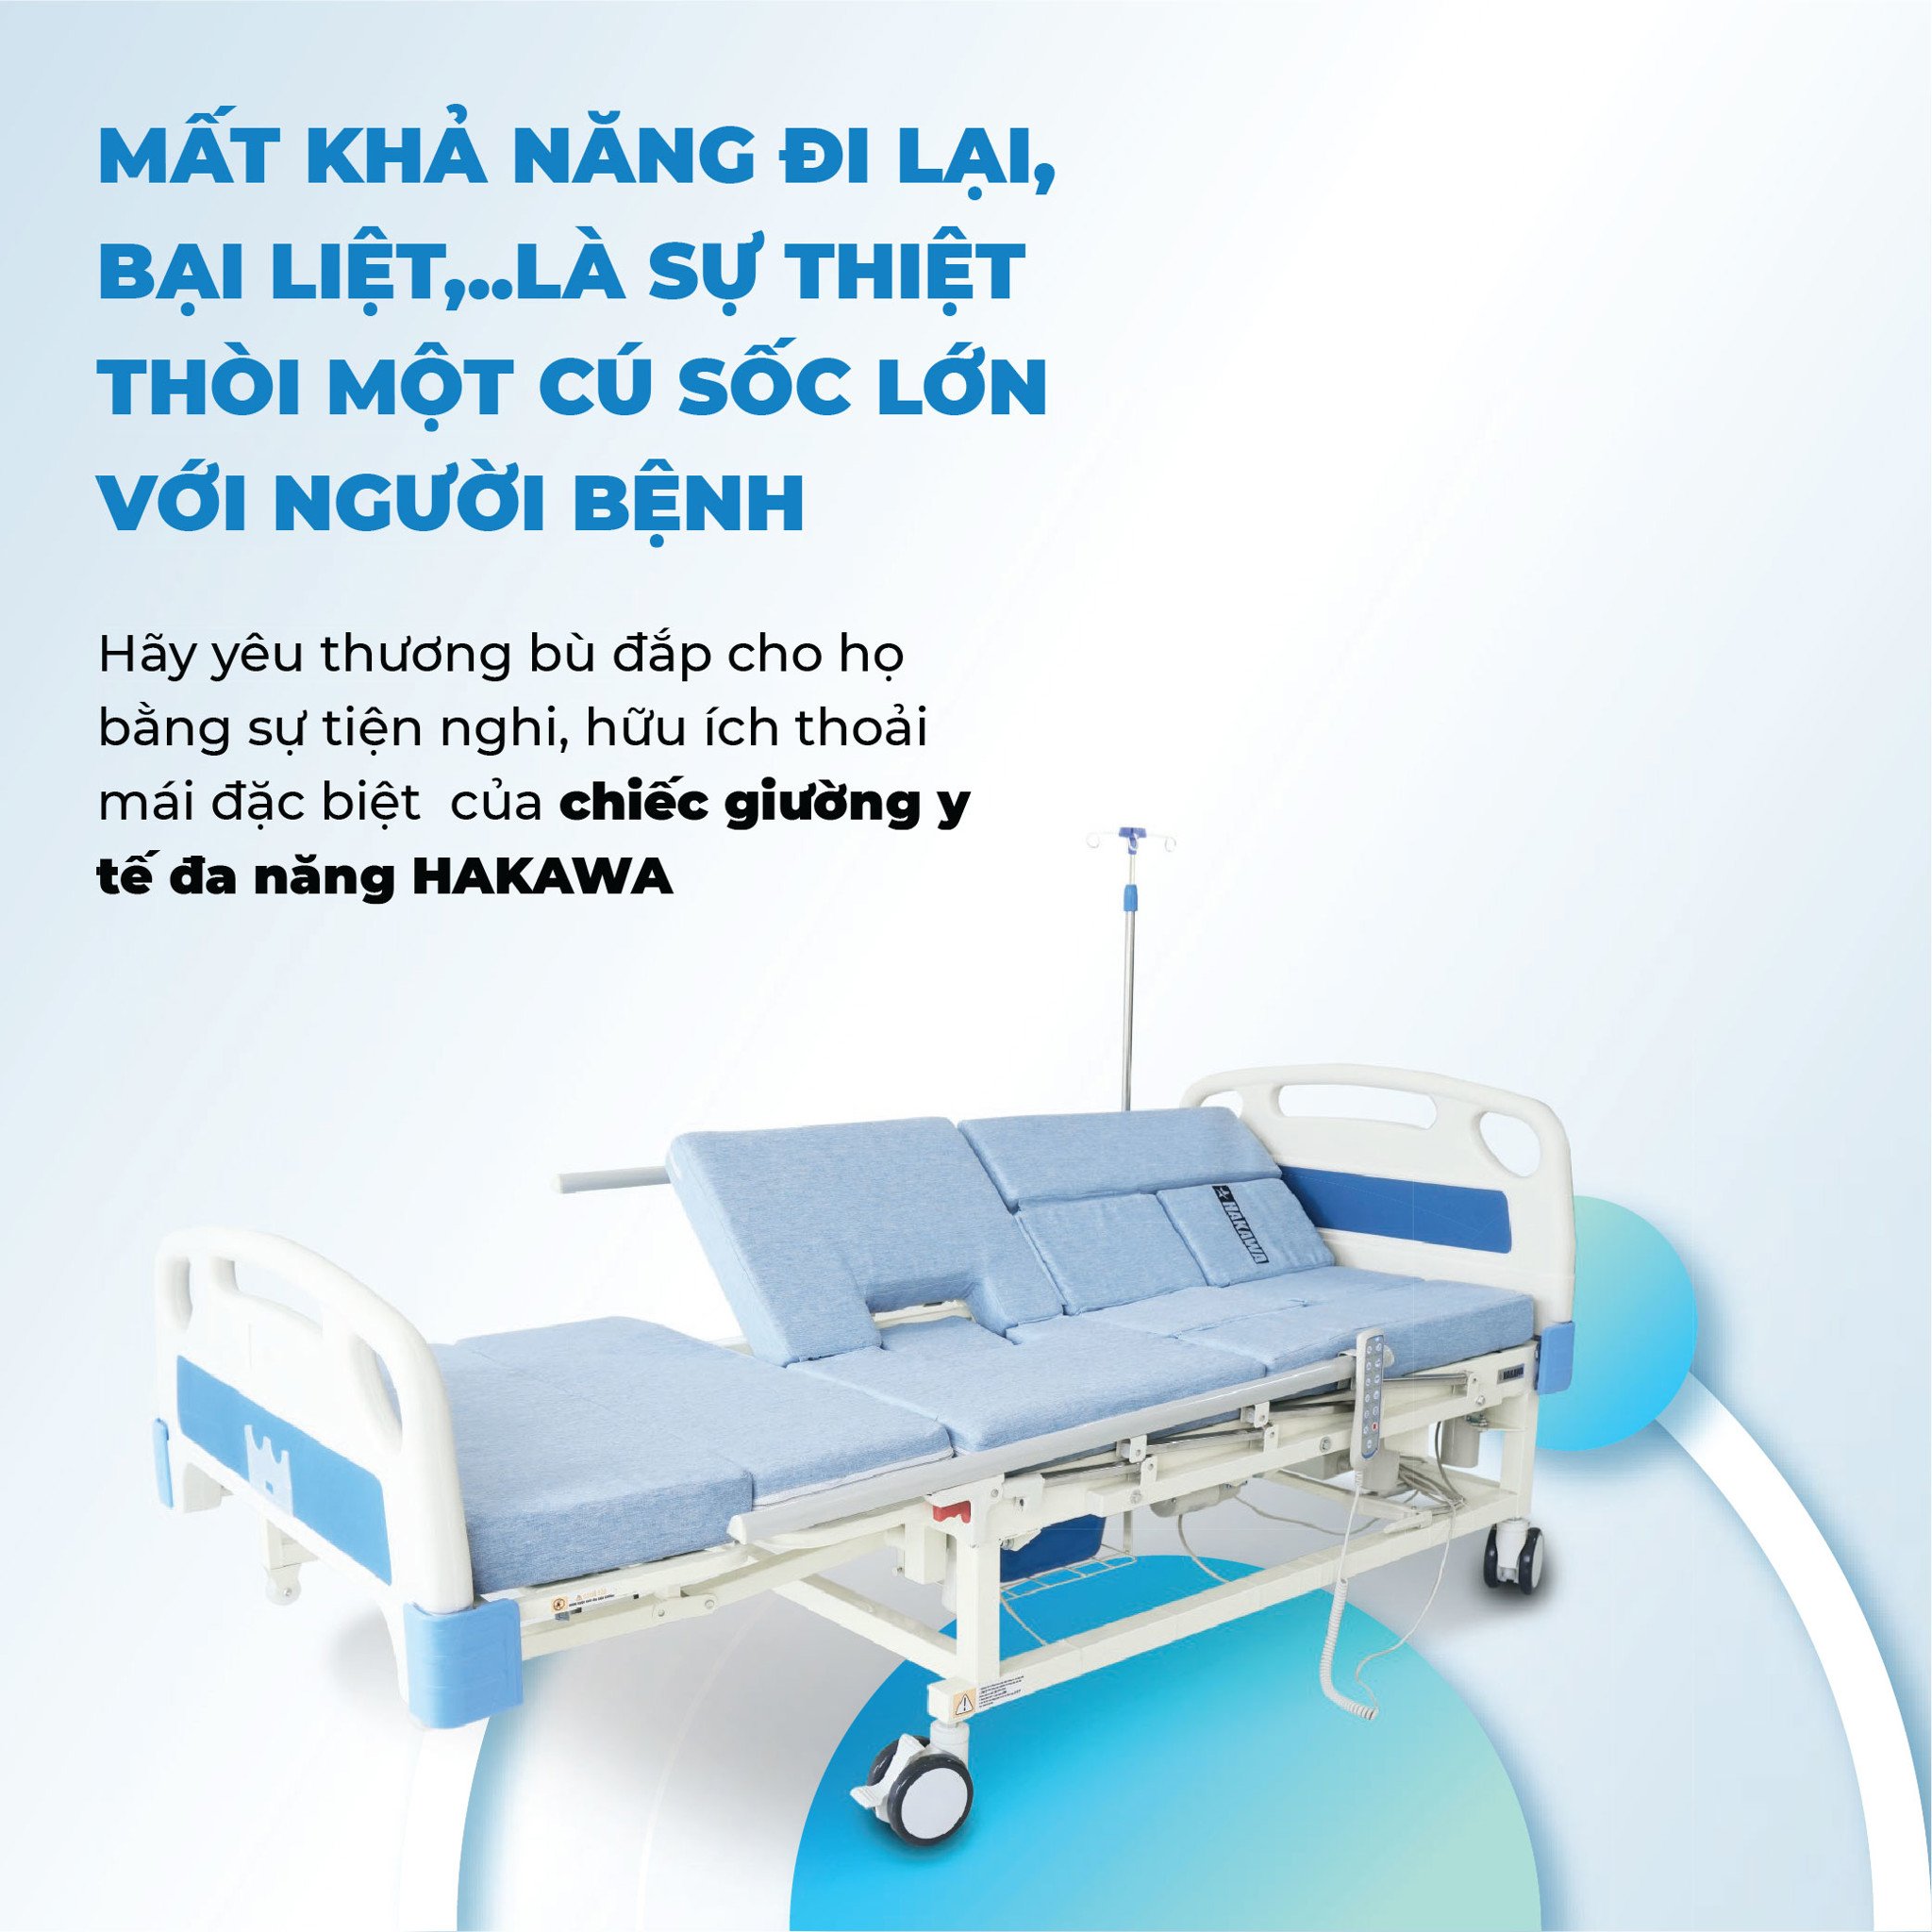 Giường y tế đa năng Hakawa hỗ trợ tiện nghi thoả mái cho người mất khả năng đi lại, bại liệt...